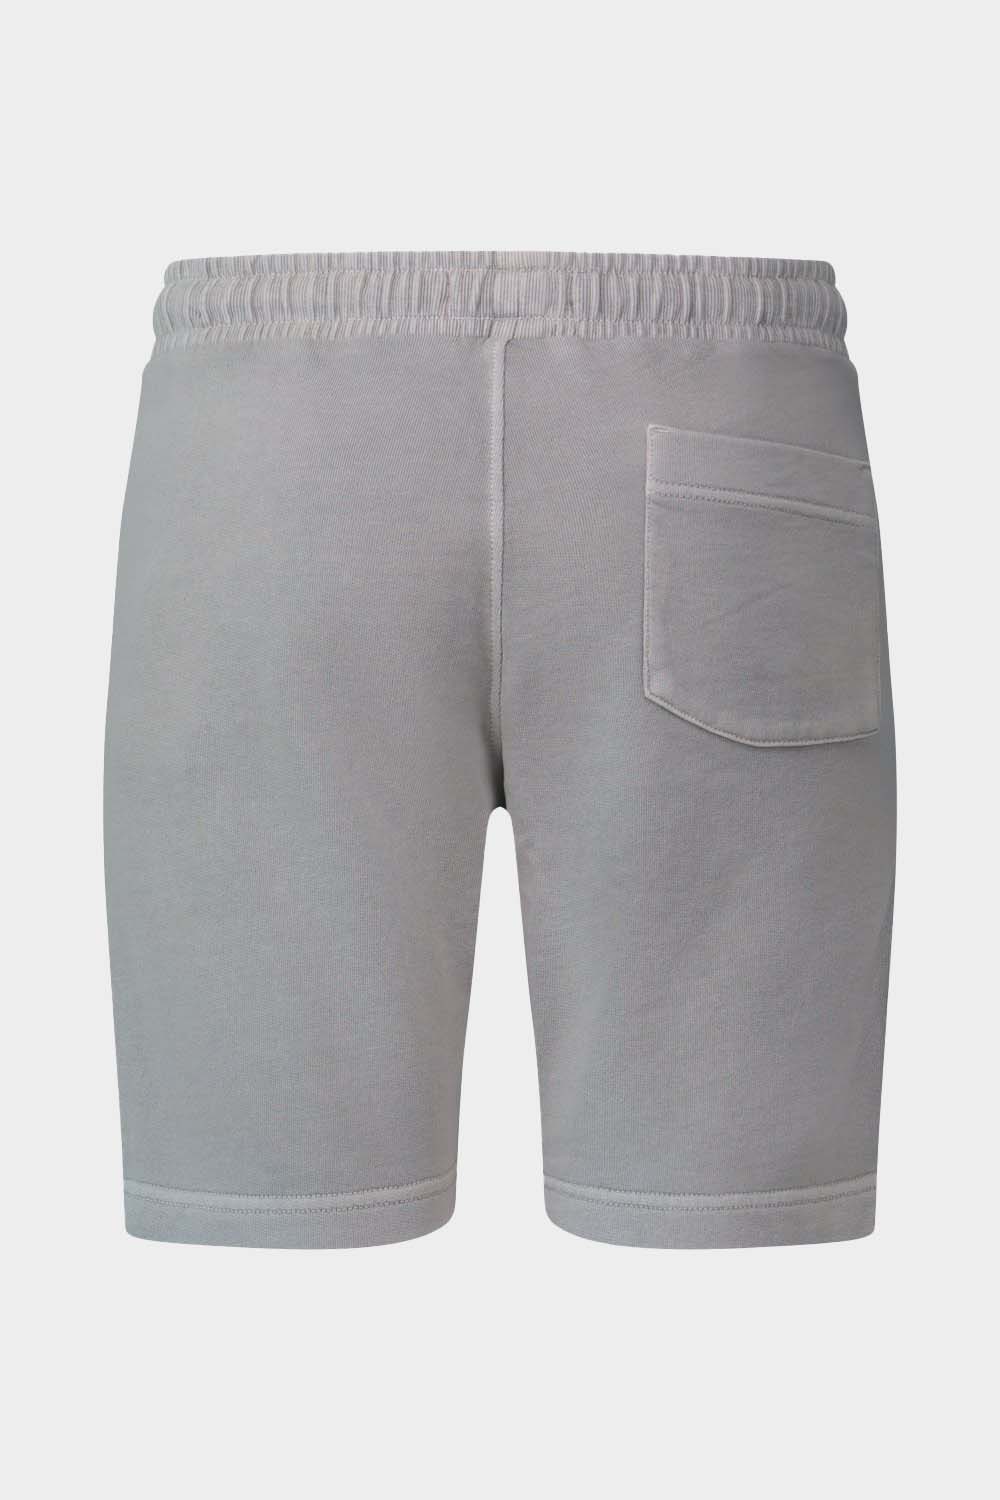 מכנסי שורט לגברים ברמודה חלקה MARC O'POLO Vendome online | ונדום .